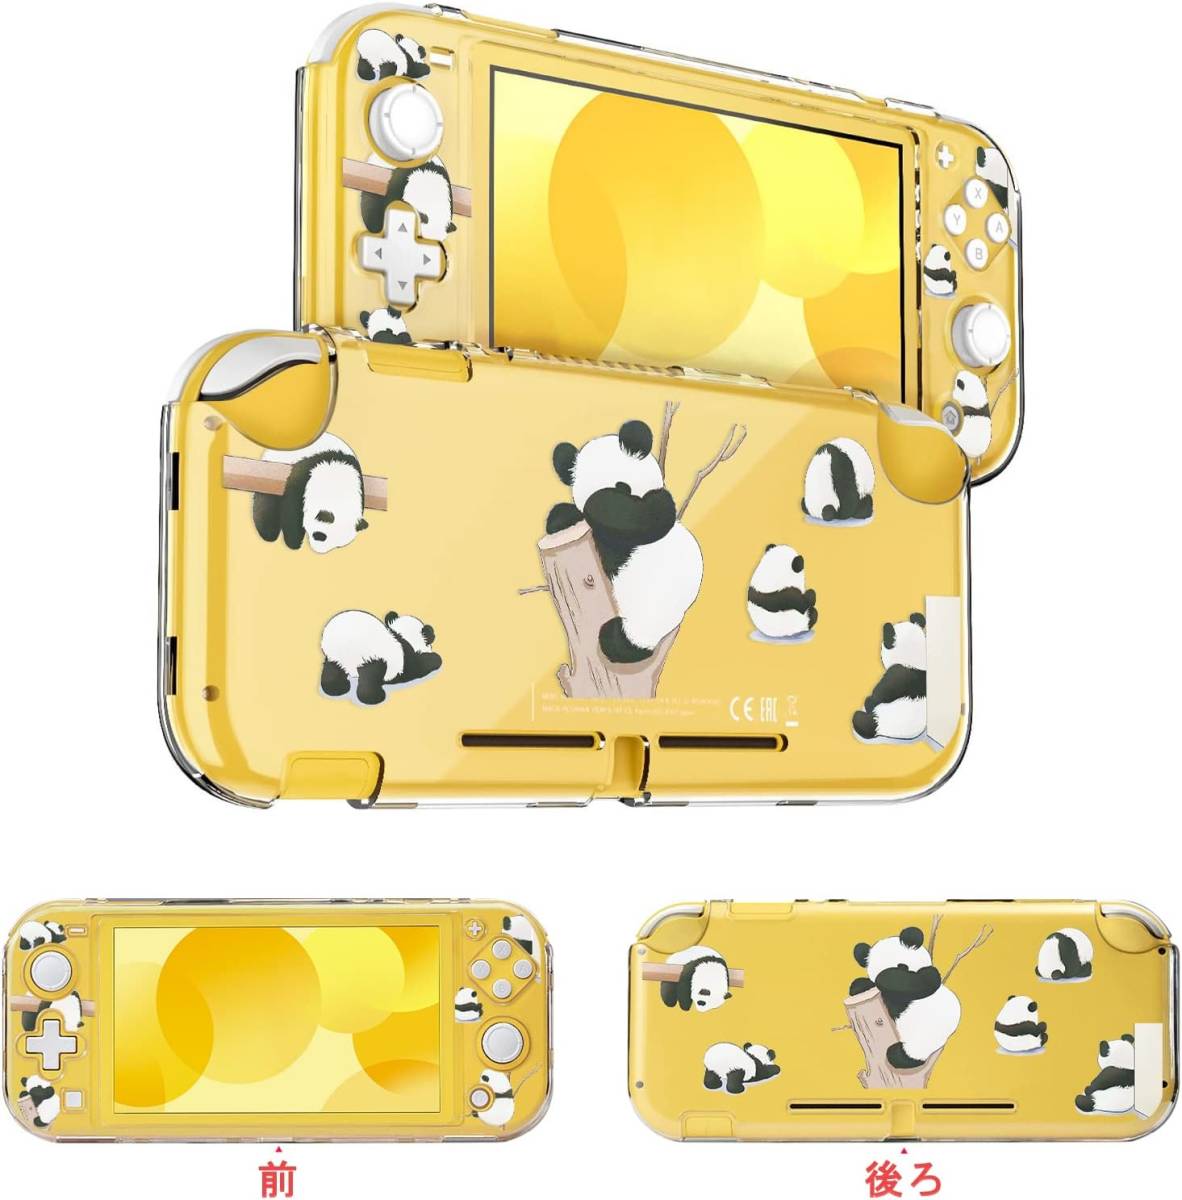 【可愛いパンダ】Switch Lite用 ケース クリアケース ニンテンドースイッチライト カバー 分体式カバー 可愛い パンダ 防塵 防水 キズ防止